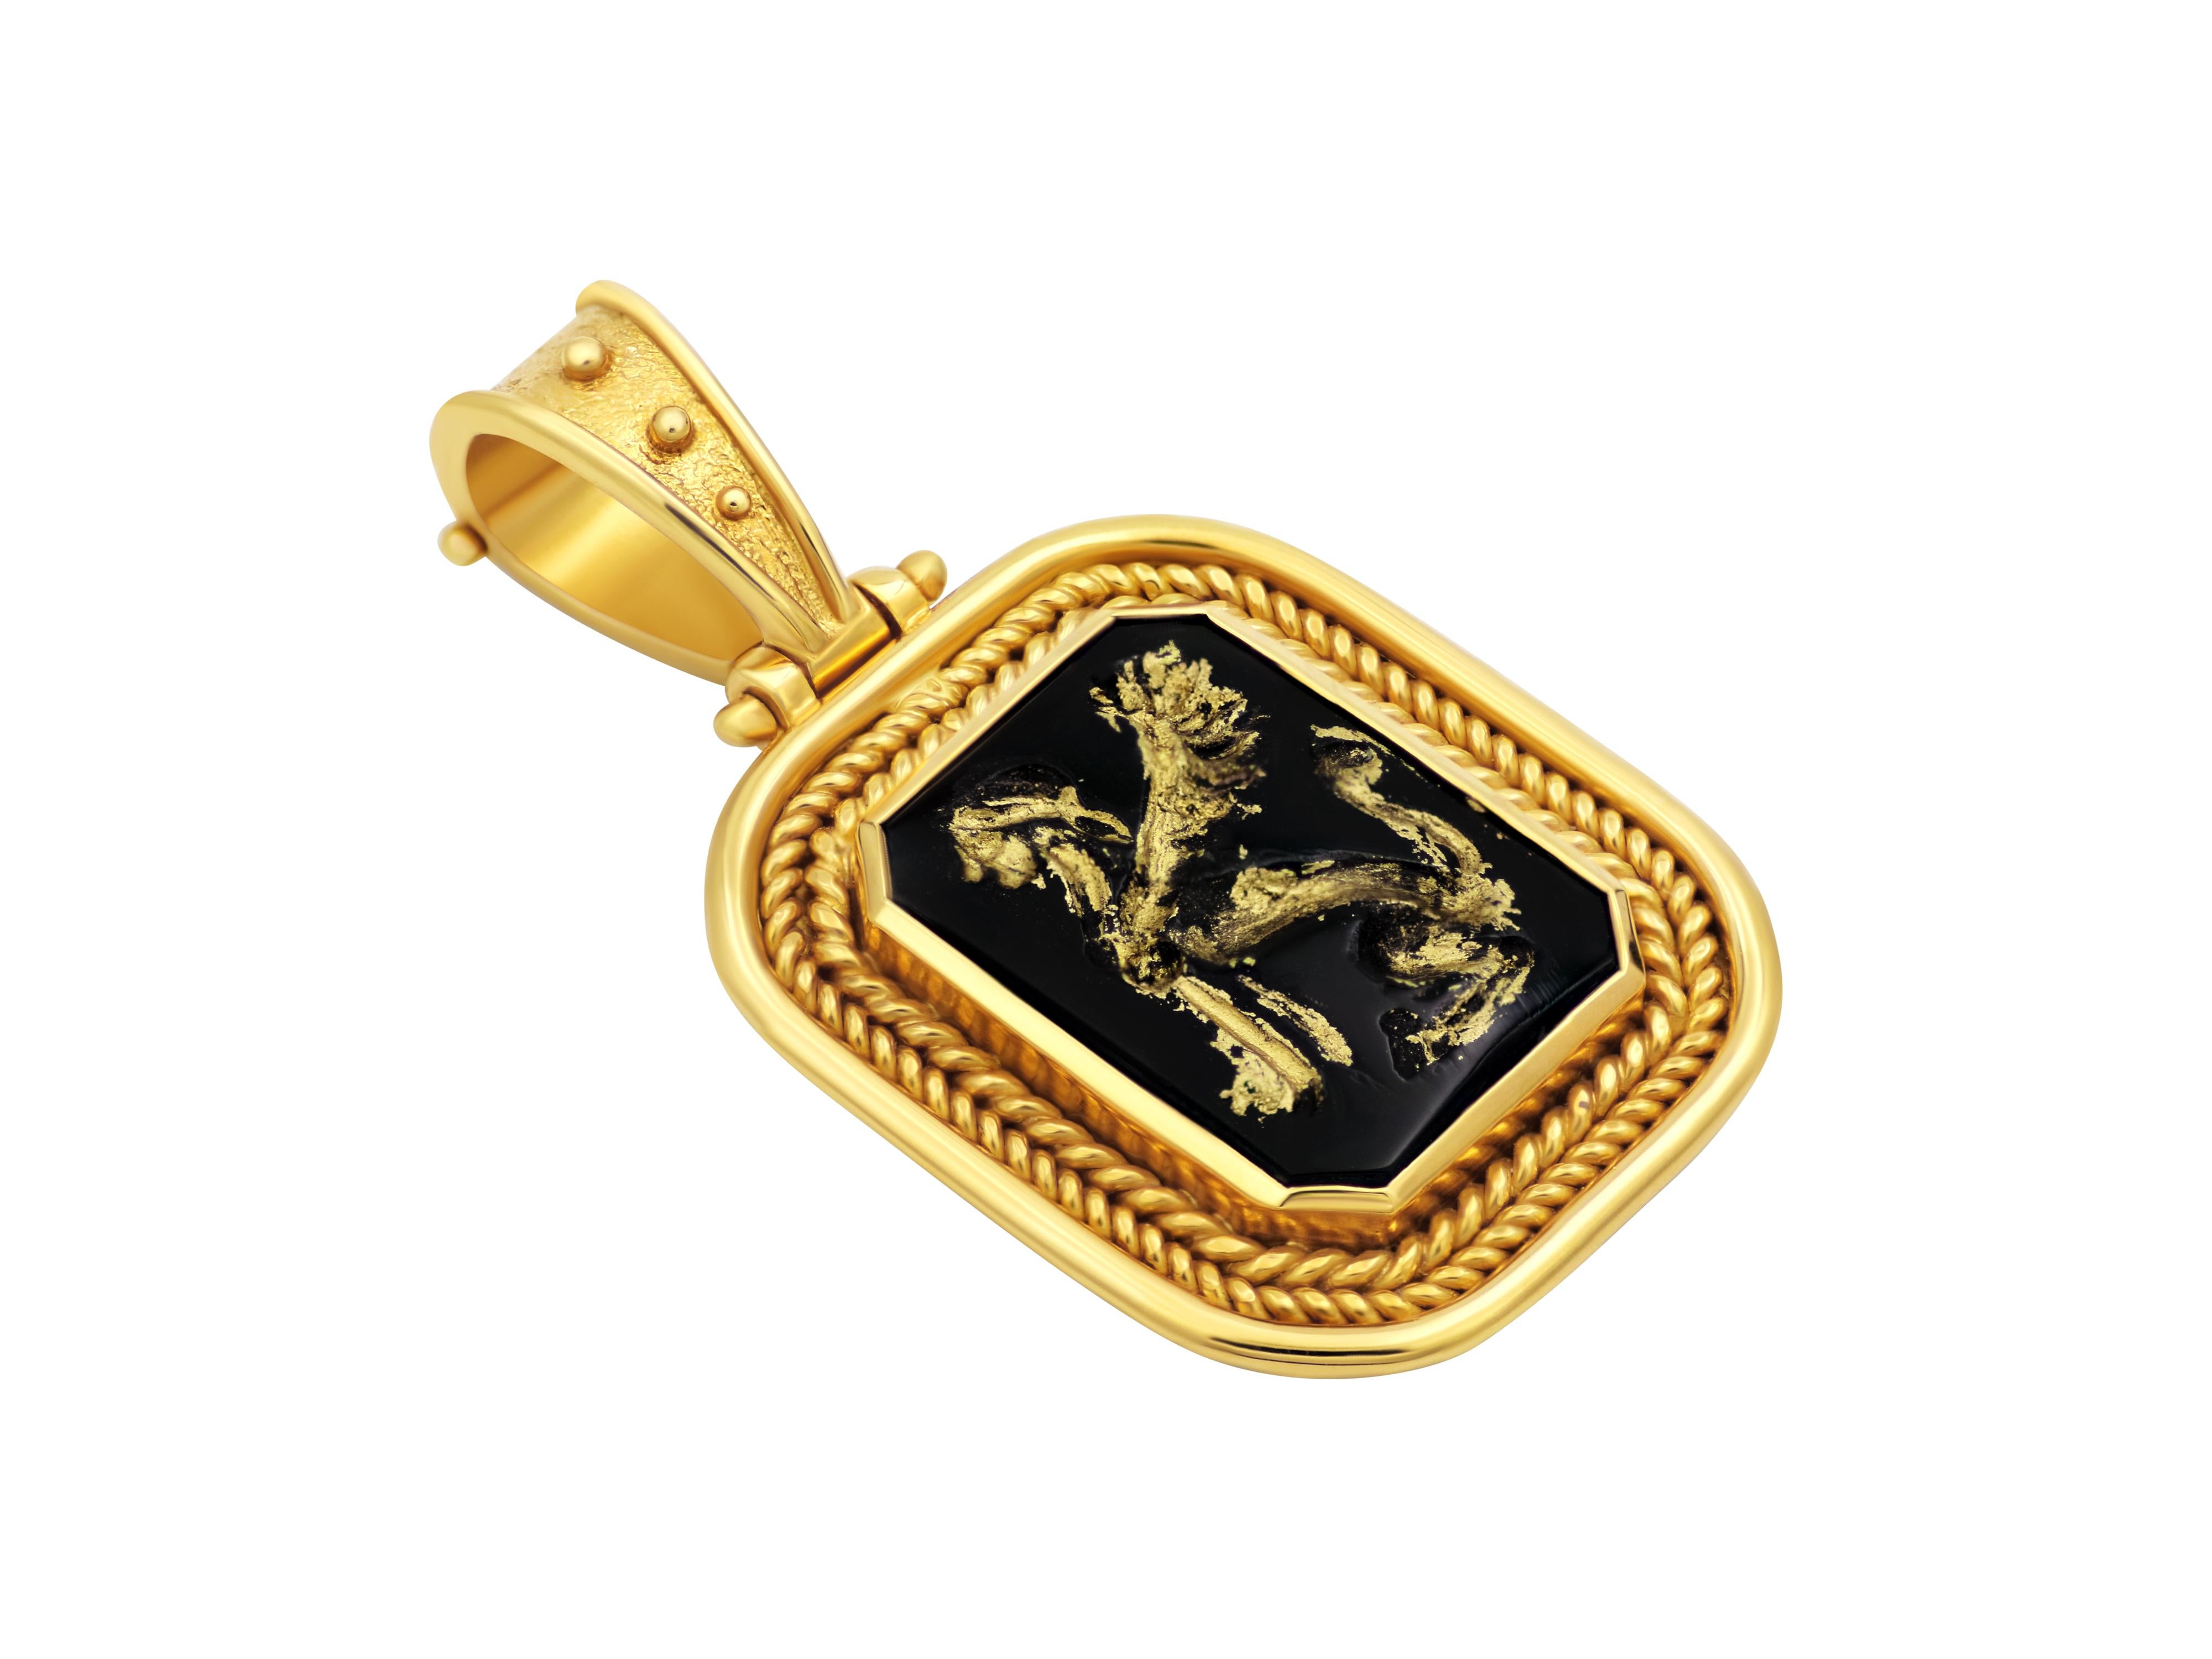 Pendentif réplique de musée en or jaune 18 carats entièrement réalisé à la main et serti d'onyx noir sculpté à la main avec le sphinx mythique. Une belle monture royale avec des fils doubles et des filigranes complète cet élégant pendentif. Ici,